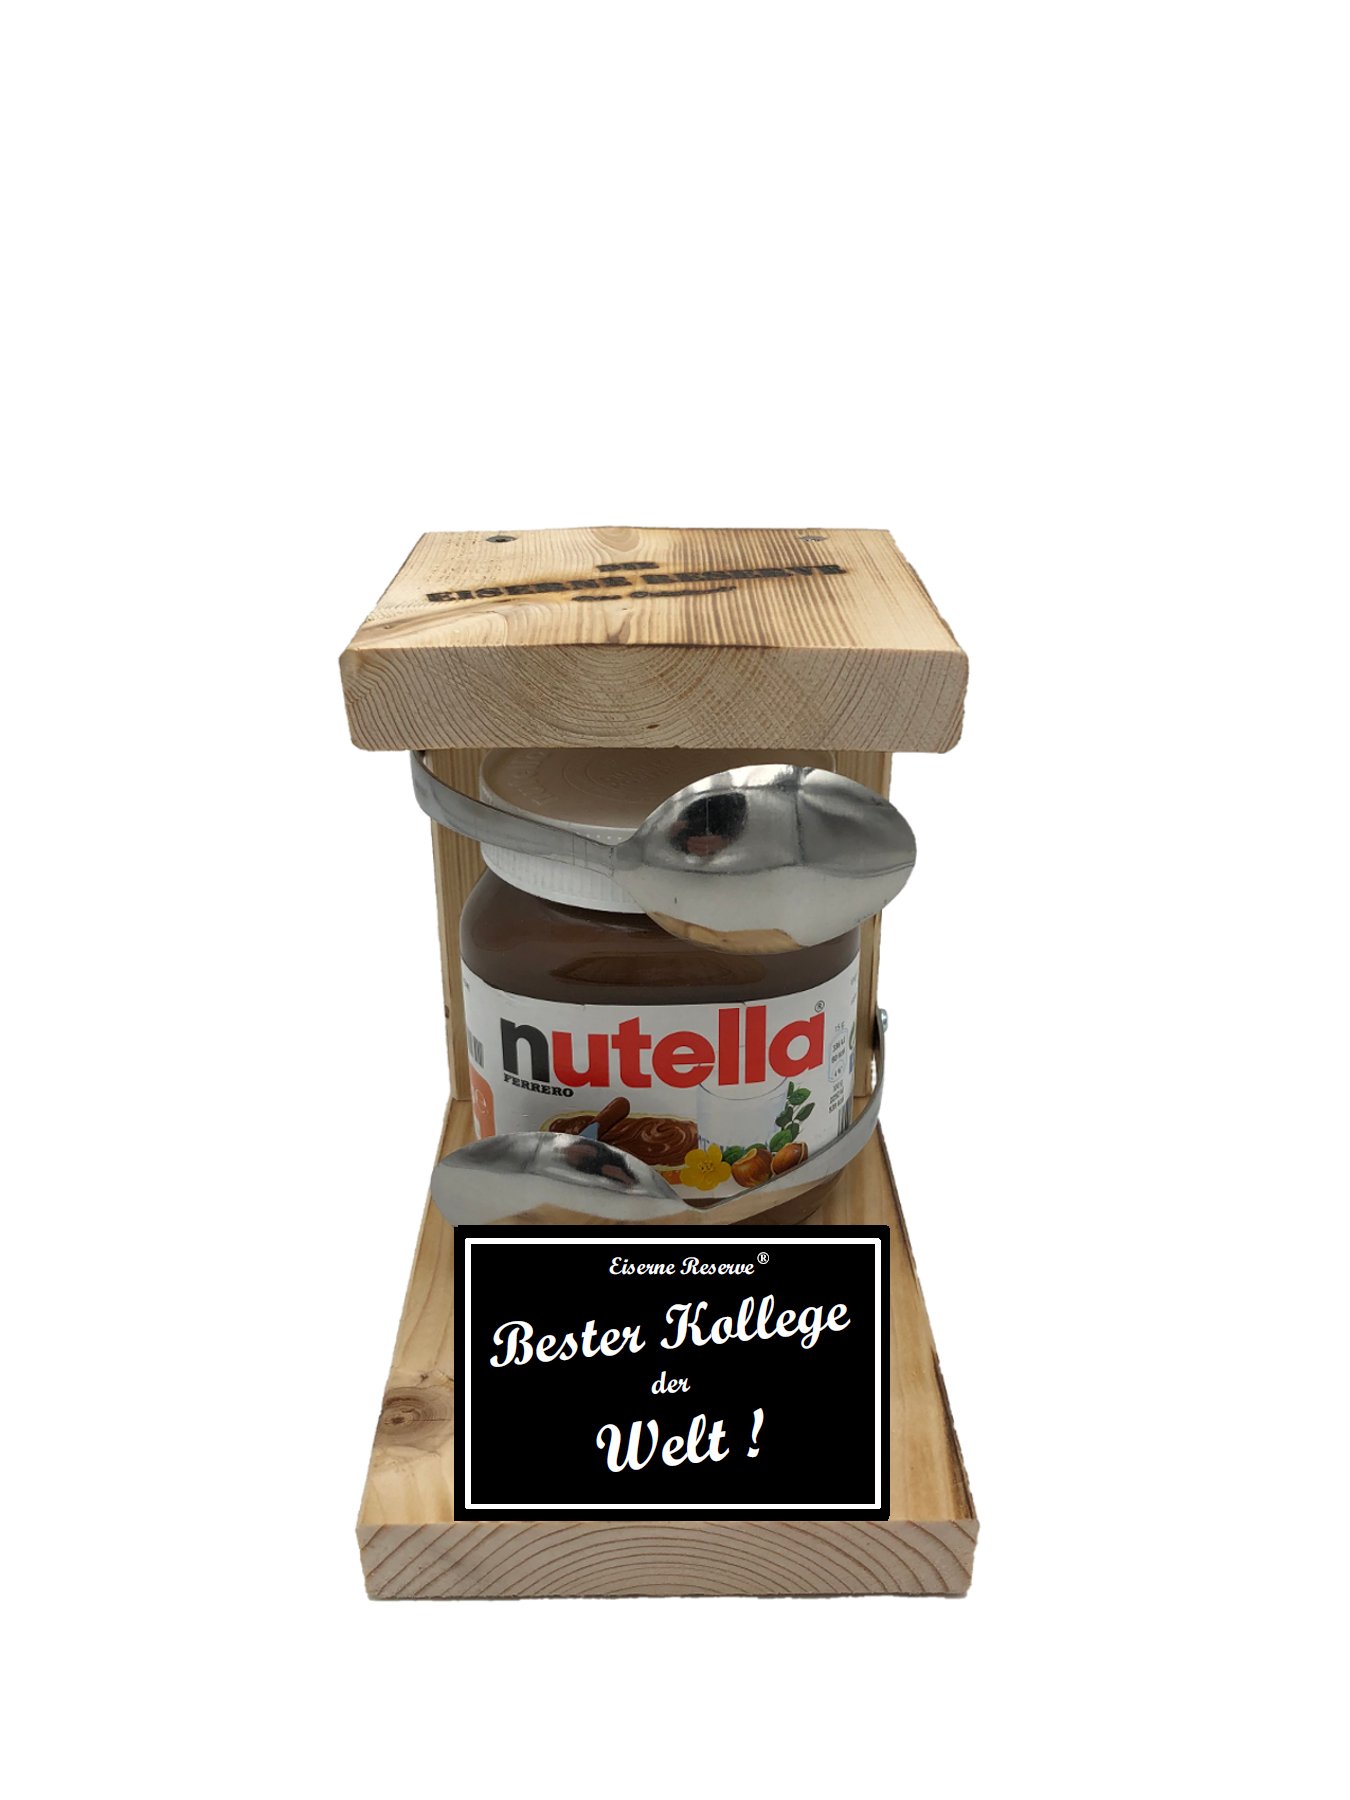 Bester Kollege der Welt Löffel Nutella Geschenk - Die Nutella Geschenkidee